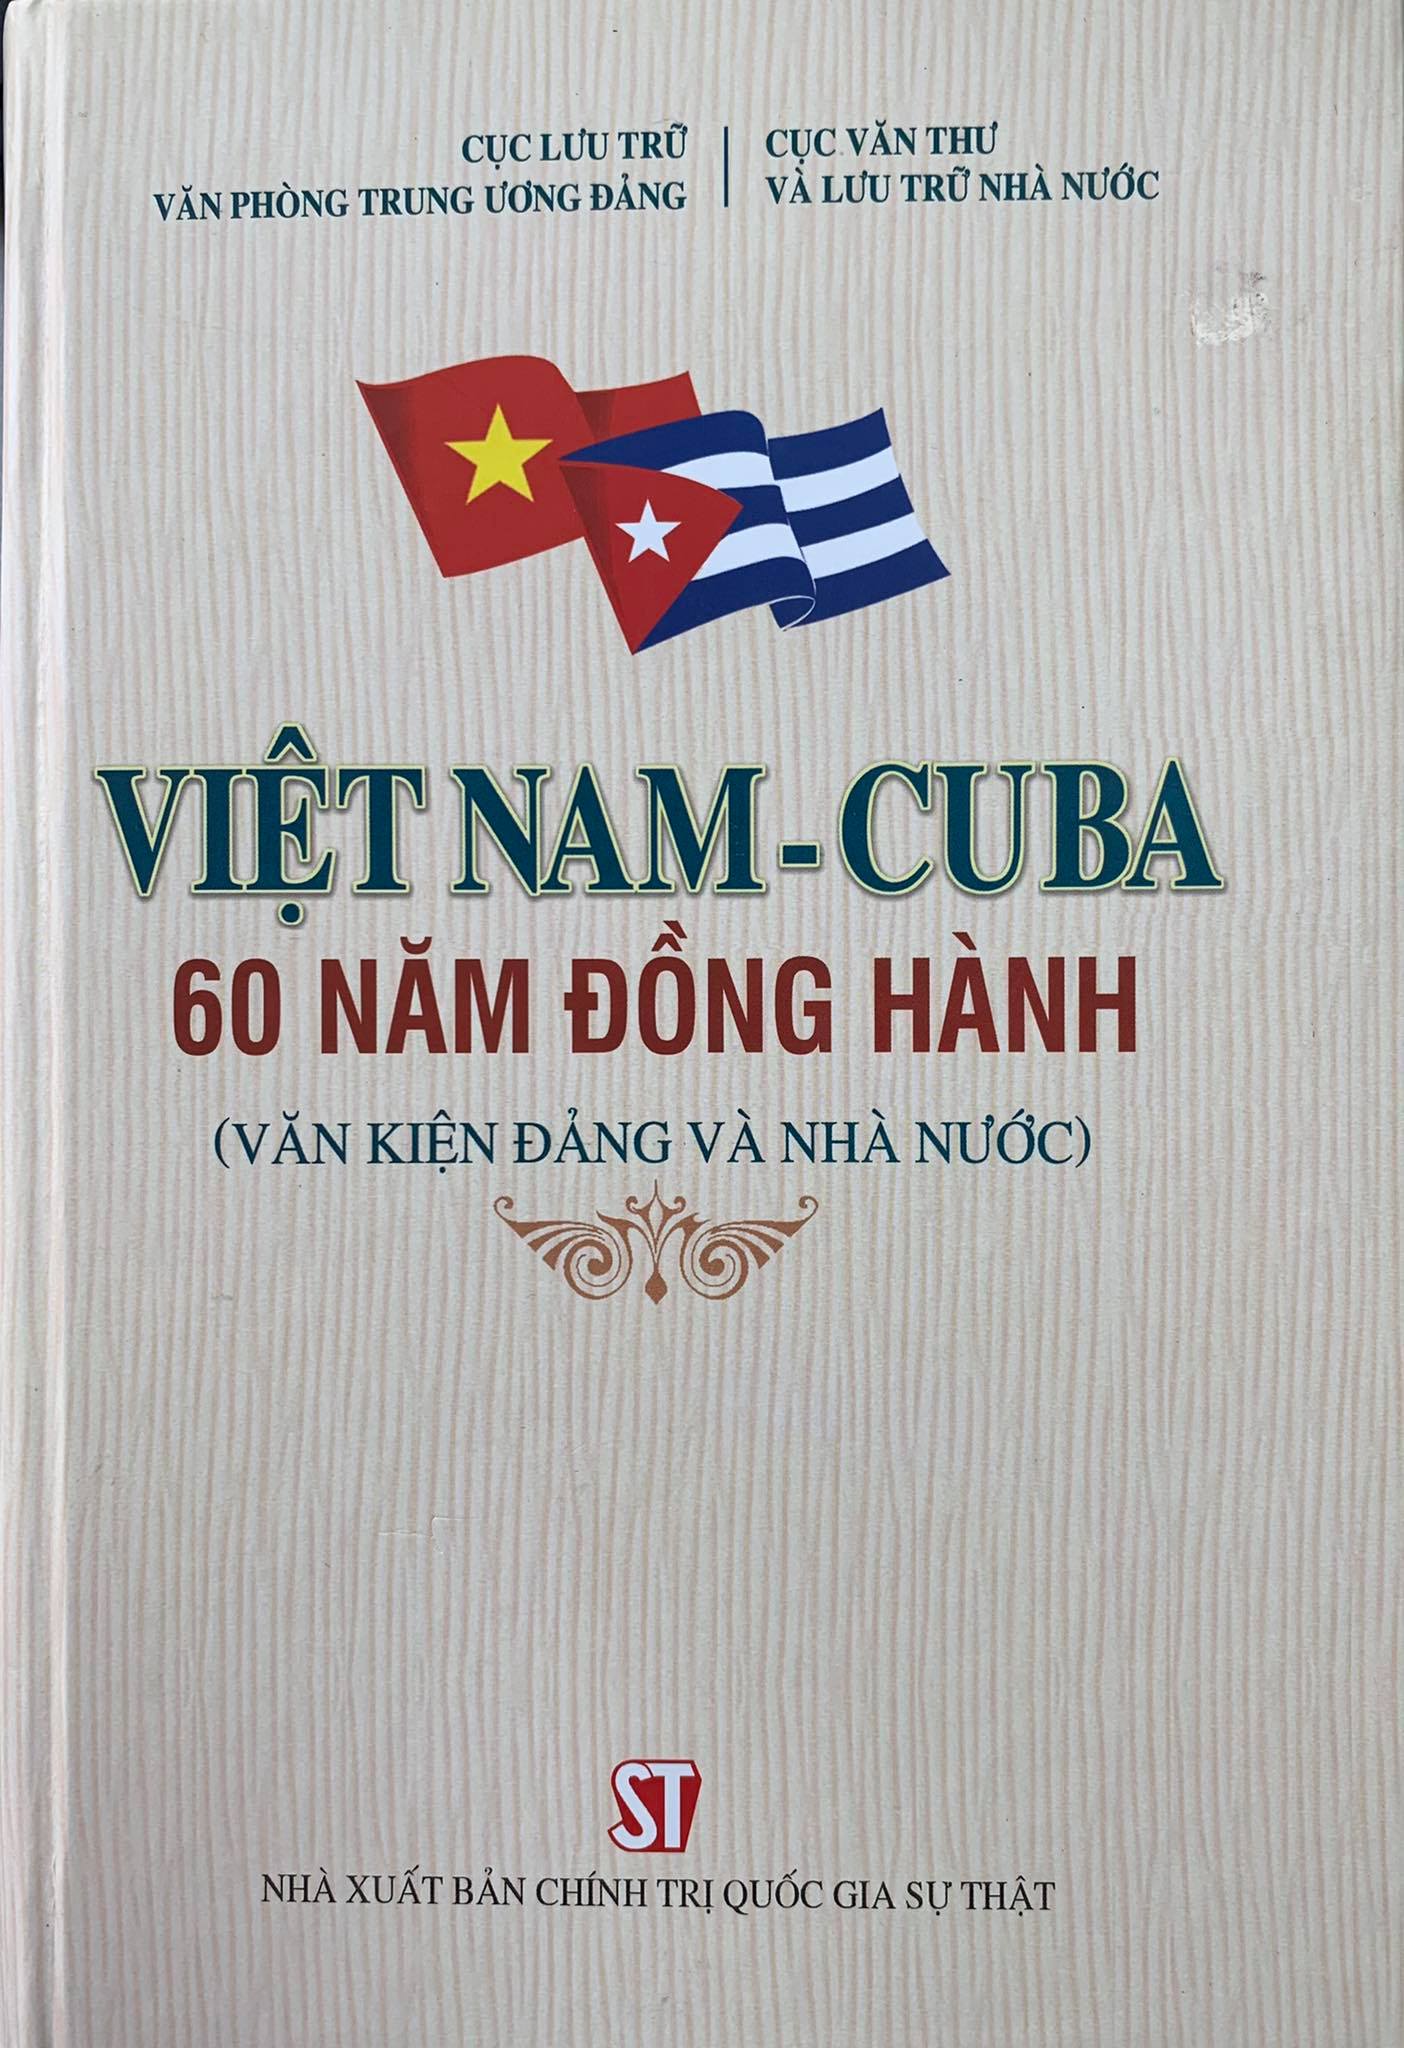 Việt Nam - Cu ba 60 năm đồng hành (Văn kiện Đảng và Nhà nước)